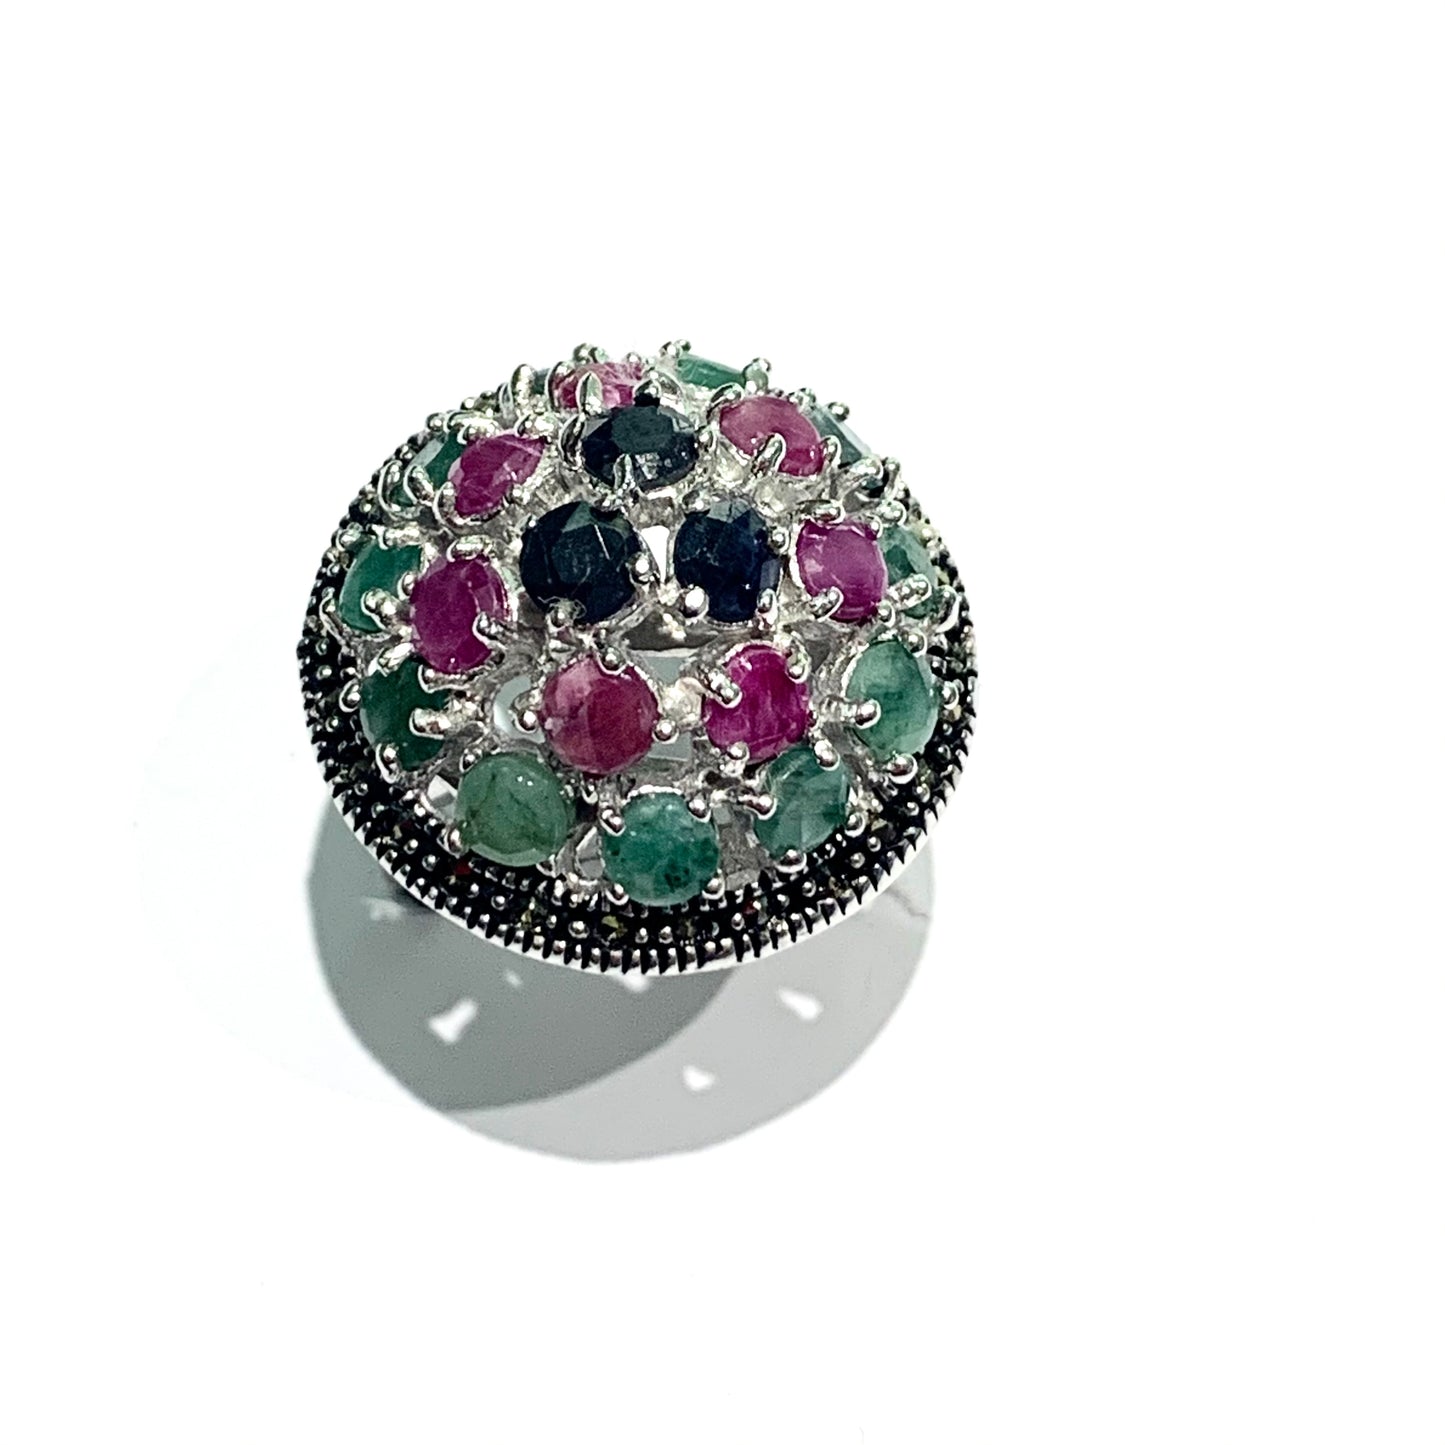 Anello in argento con radici di smeraldo, zaffiro e rubino.  Dimensioni anello 2,3 cm di larghezza e 1,2 cm di altezza.  Misura 13.